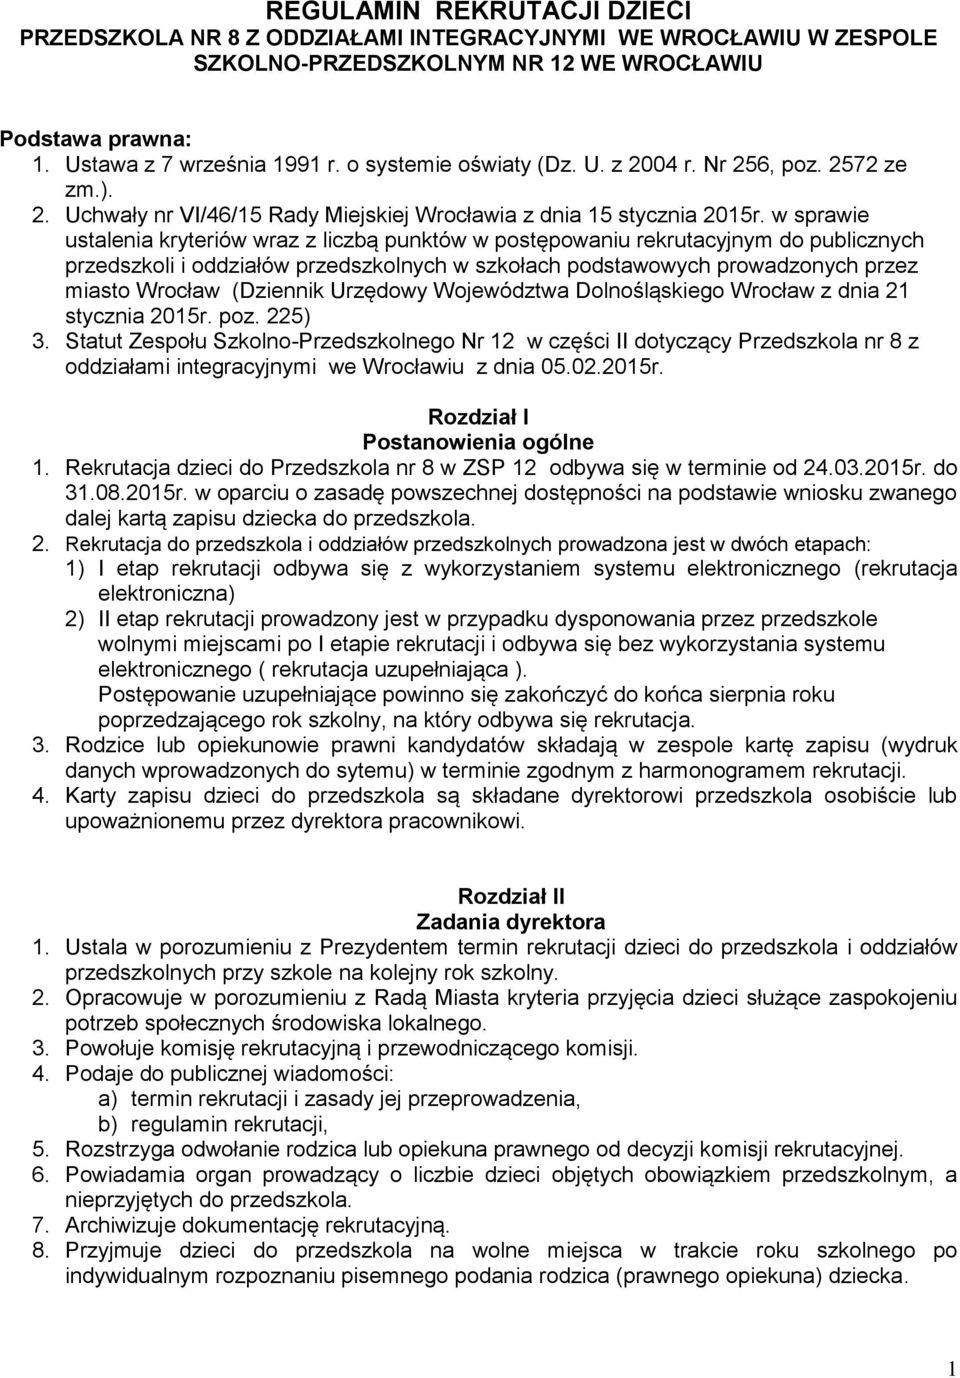 w sprawie ustalenia kryteriów wraz z liczbą punktów w postępowaniu rekrutacyjnym do publicznych przedszkoli i oddziałów przedszkolnych w szkołach podstawowych prowadzonych przez miasto Wrocław